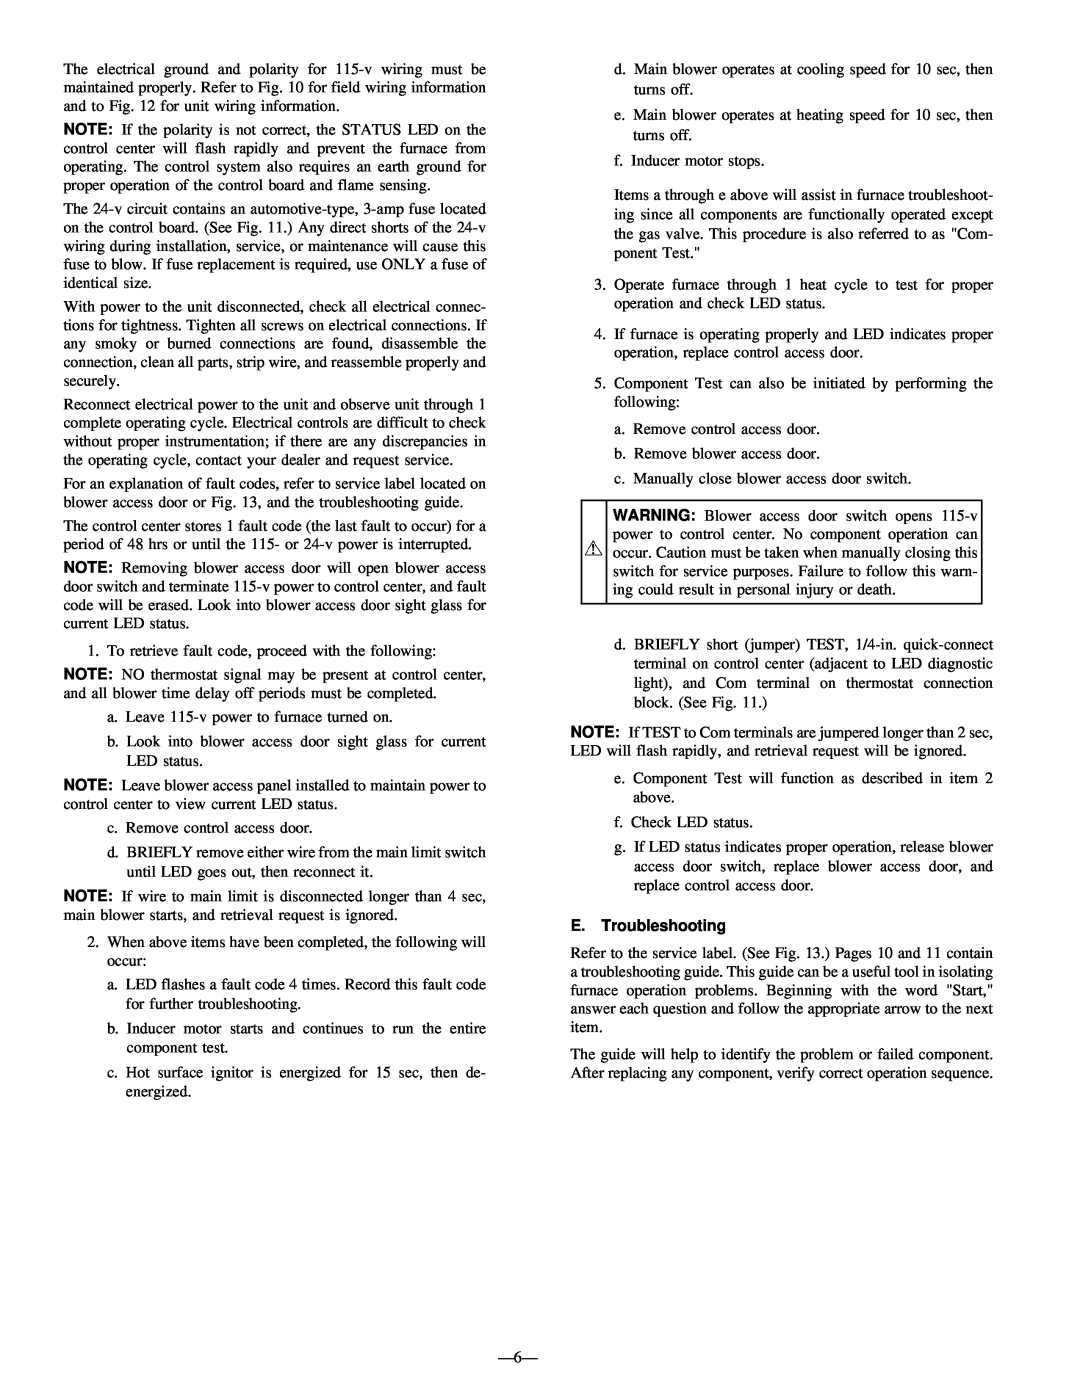 Bryant 383KAV instruction manual E.Troubleshooting 